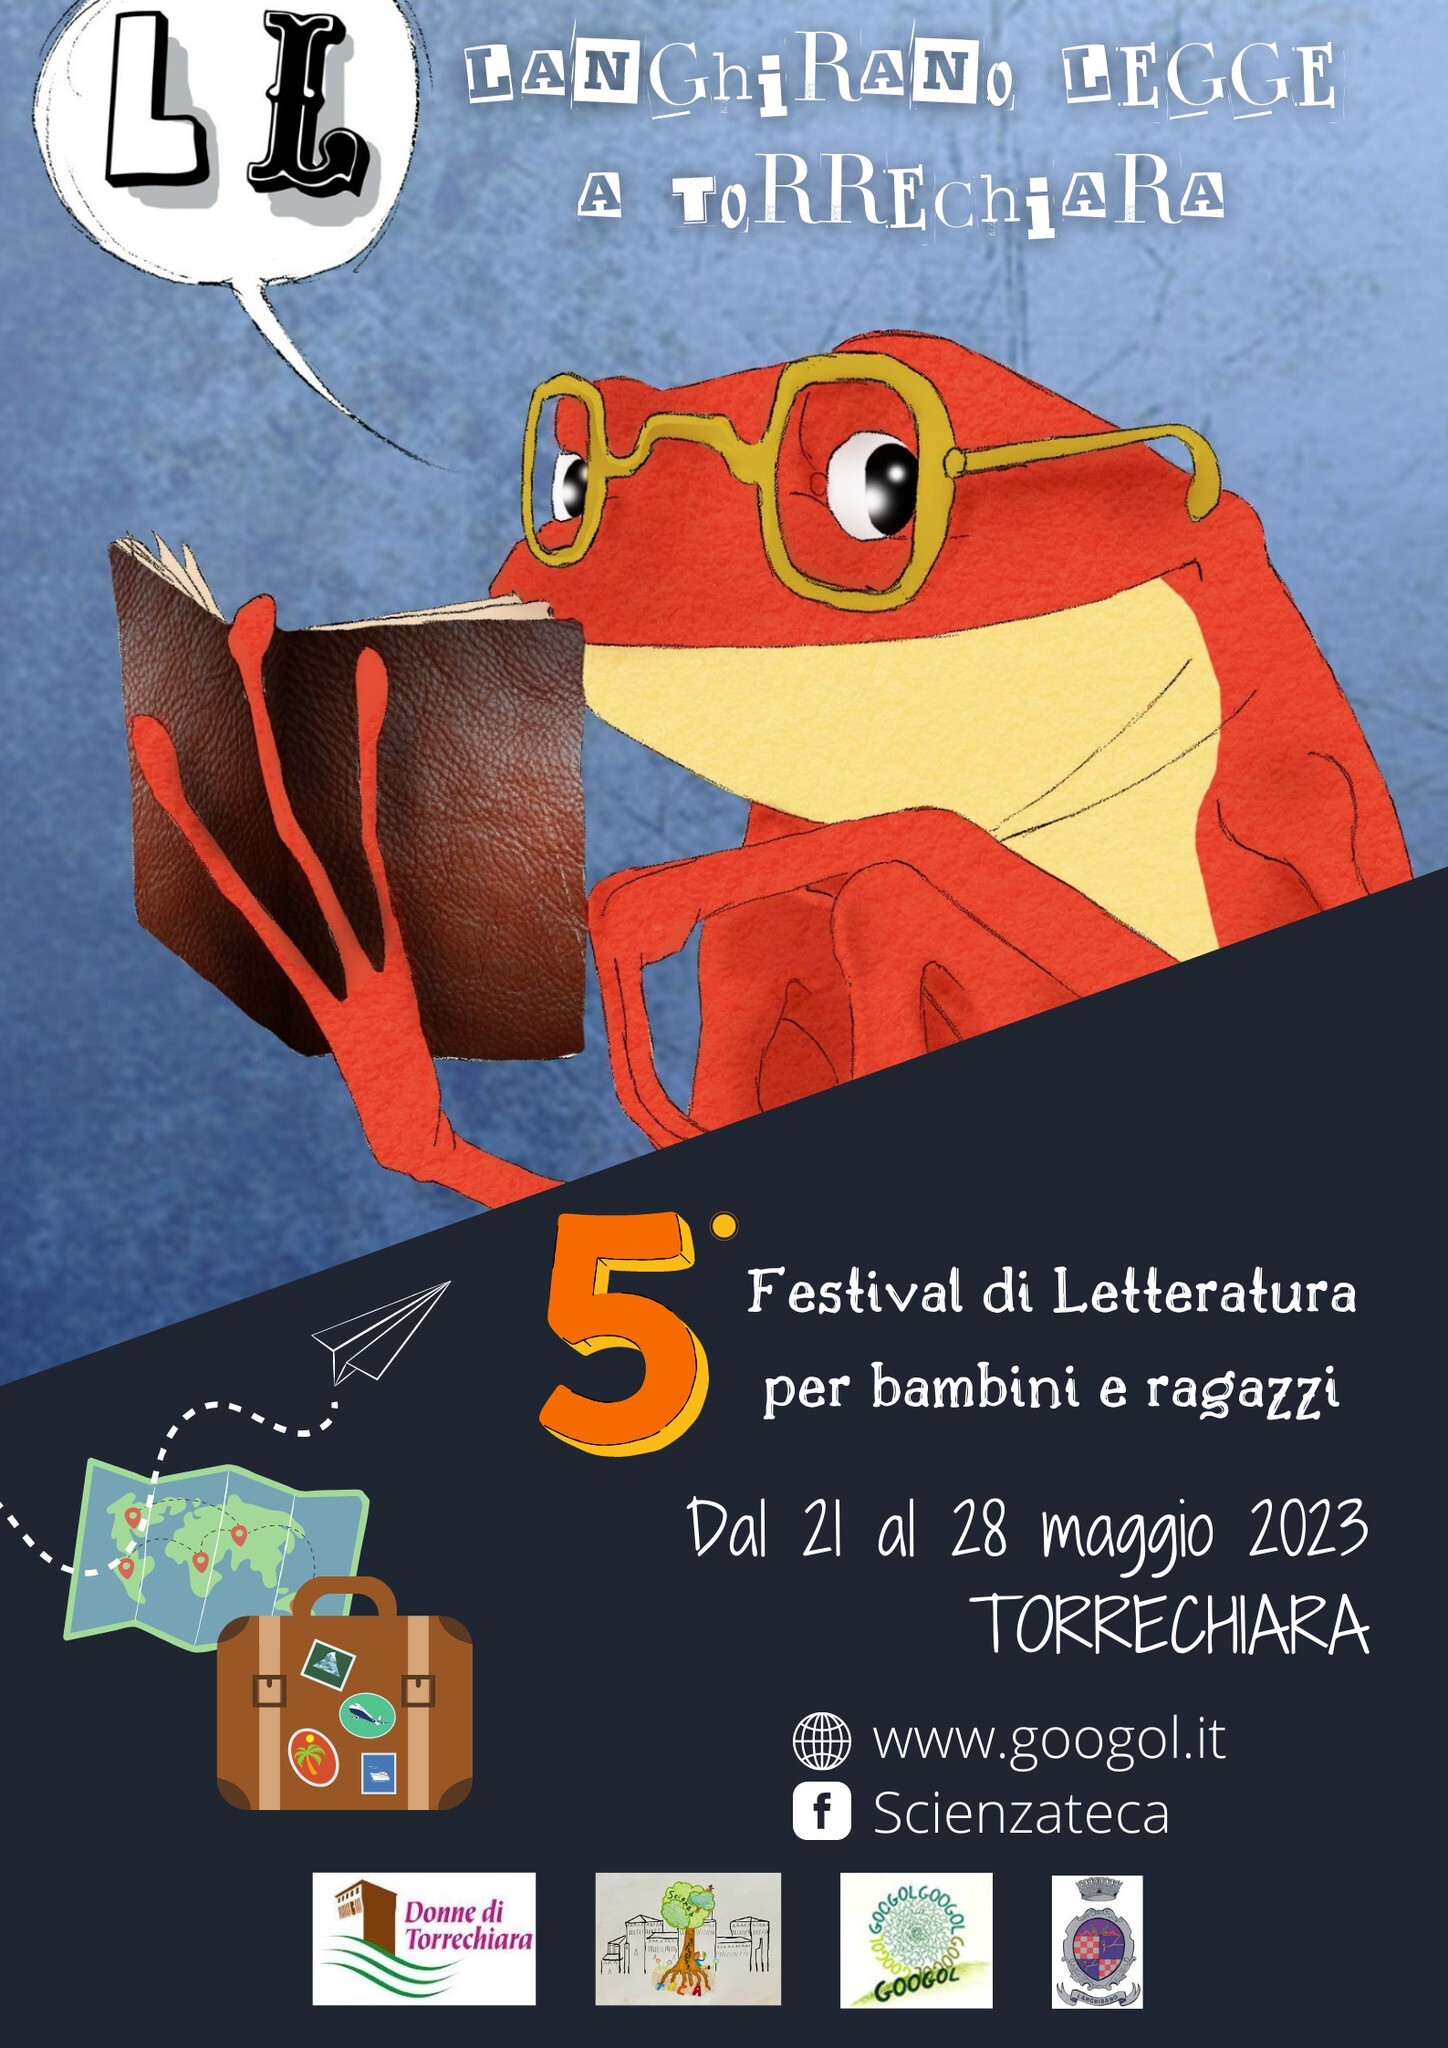 Langhirano Legge a Torrechiara 2023 - Festival di letteratura per bambini e ragazzi